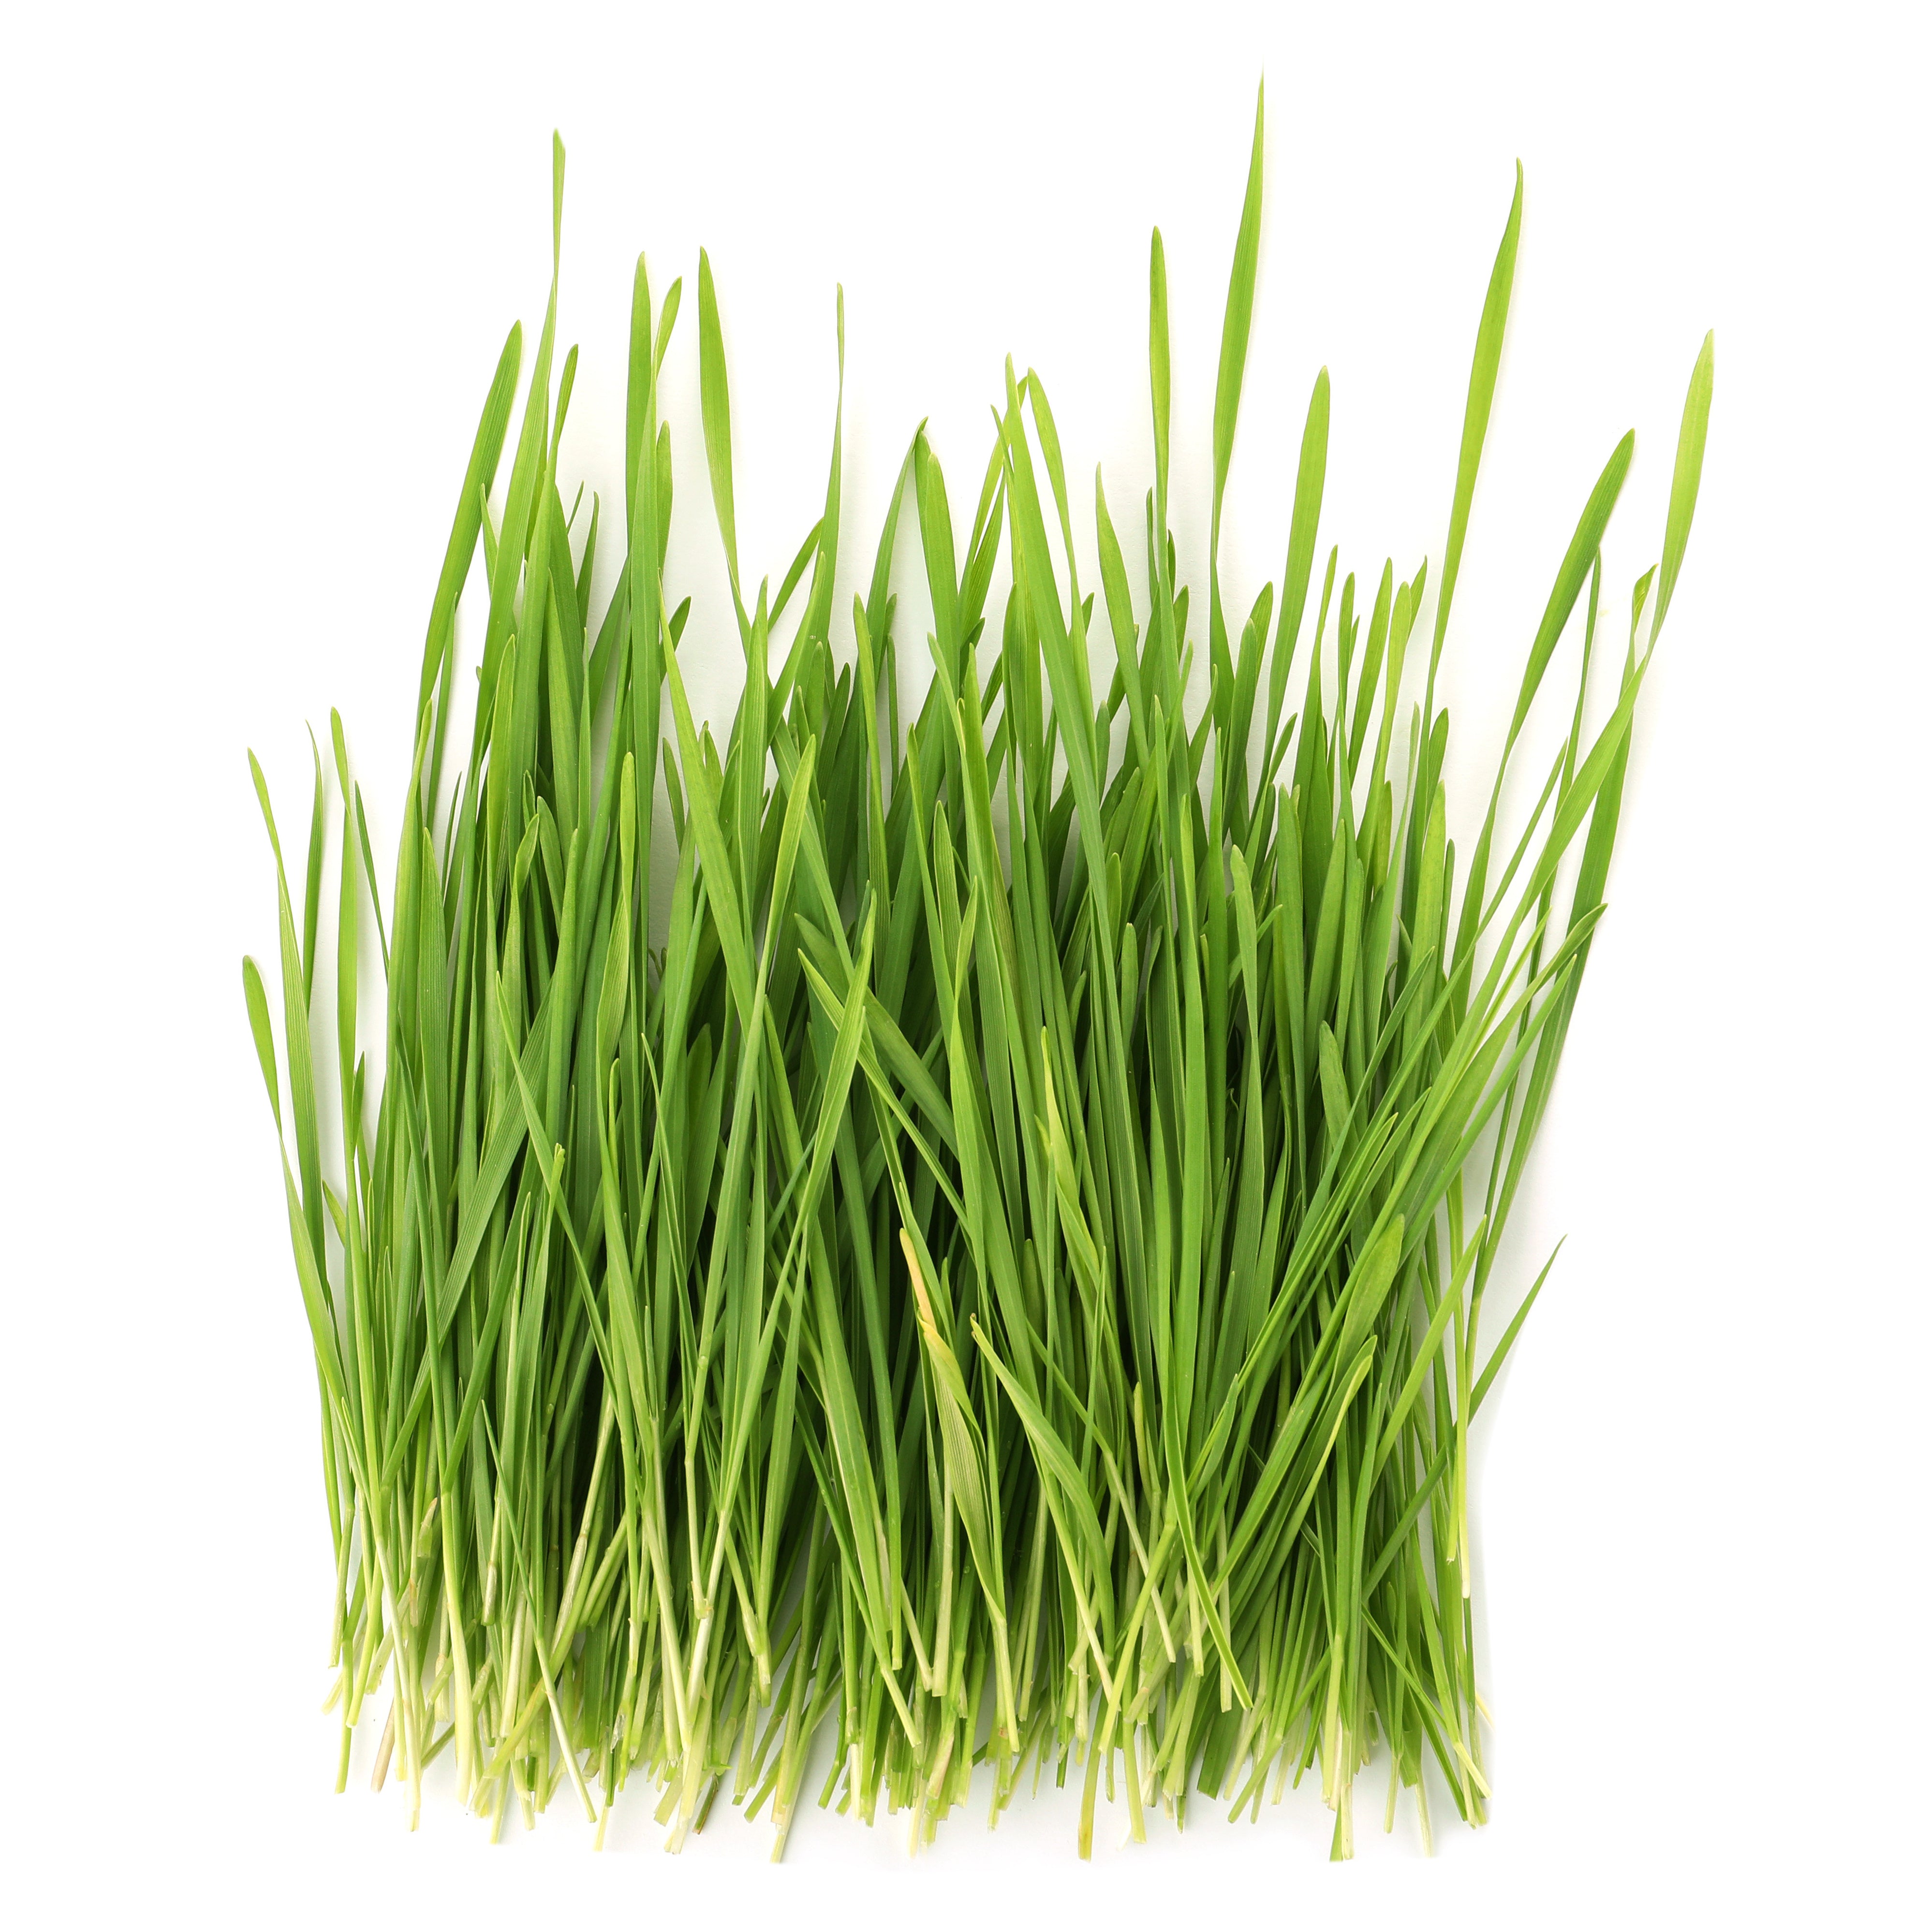 Oat Grass